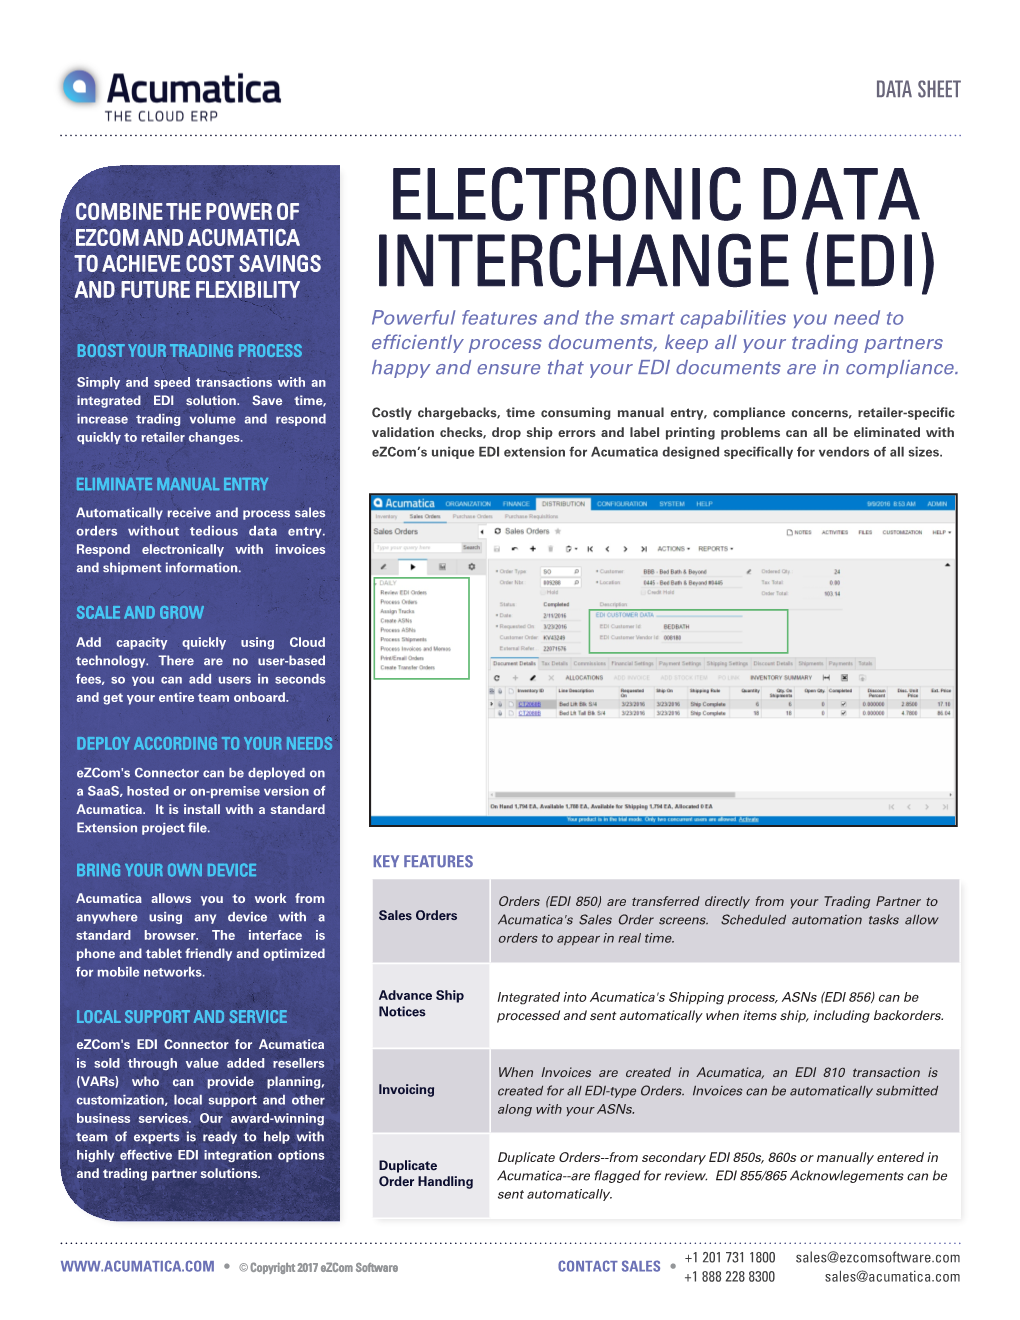 Electronic Data Interchange (Edi)